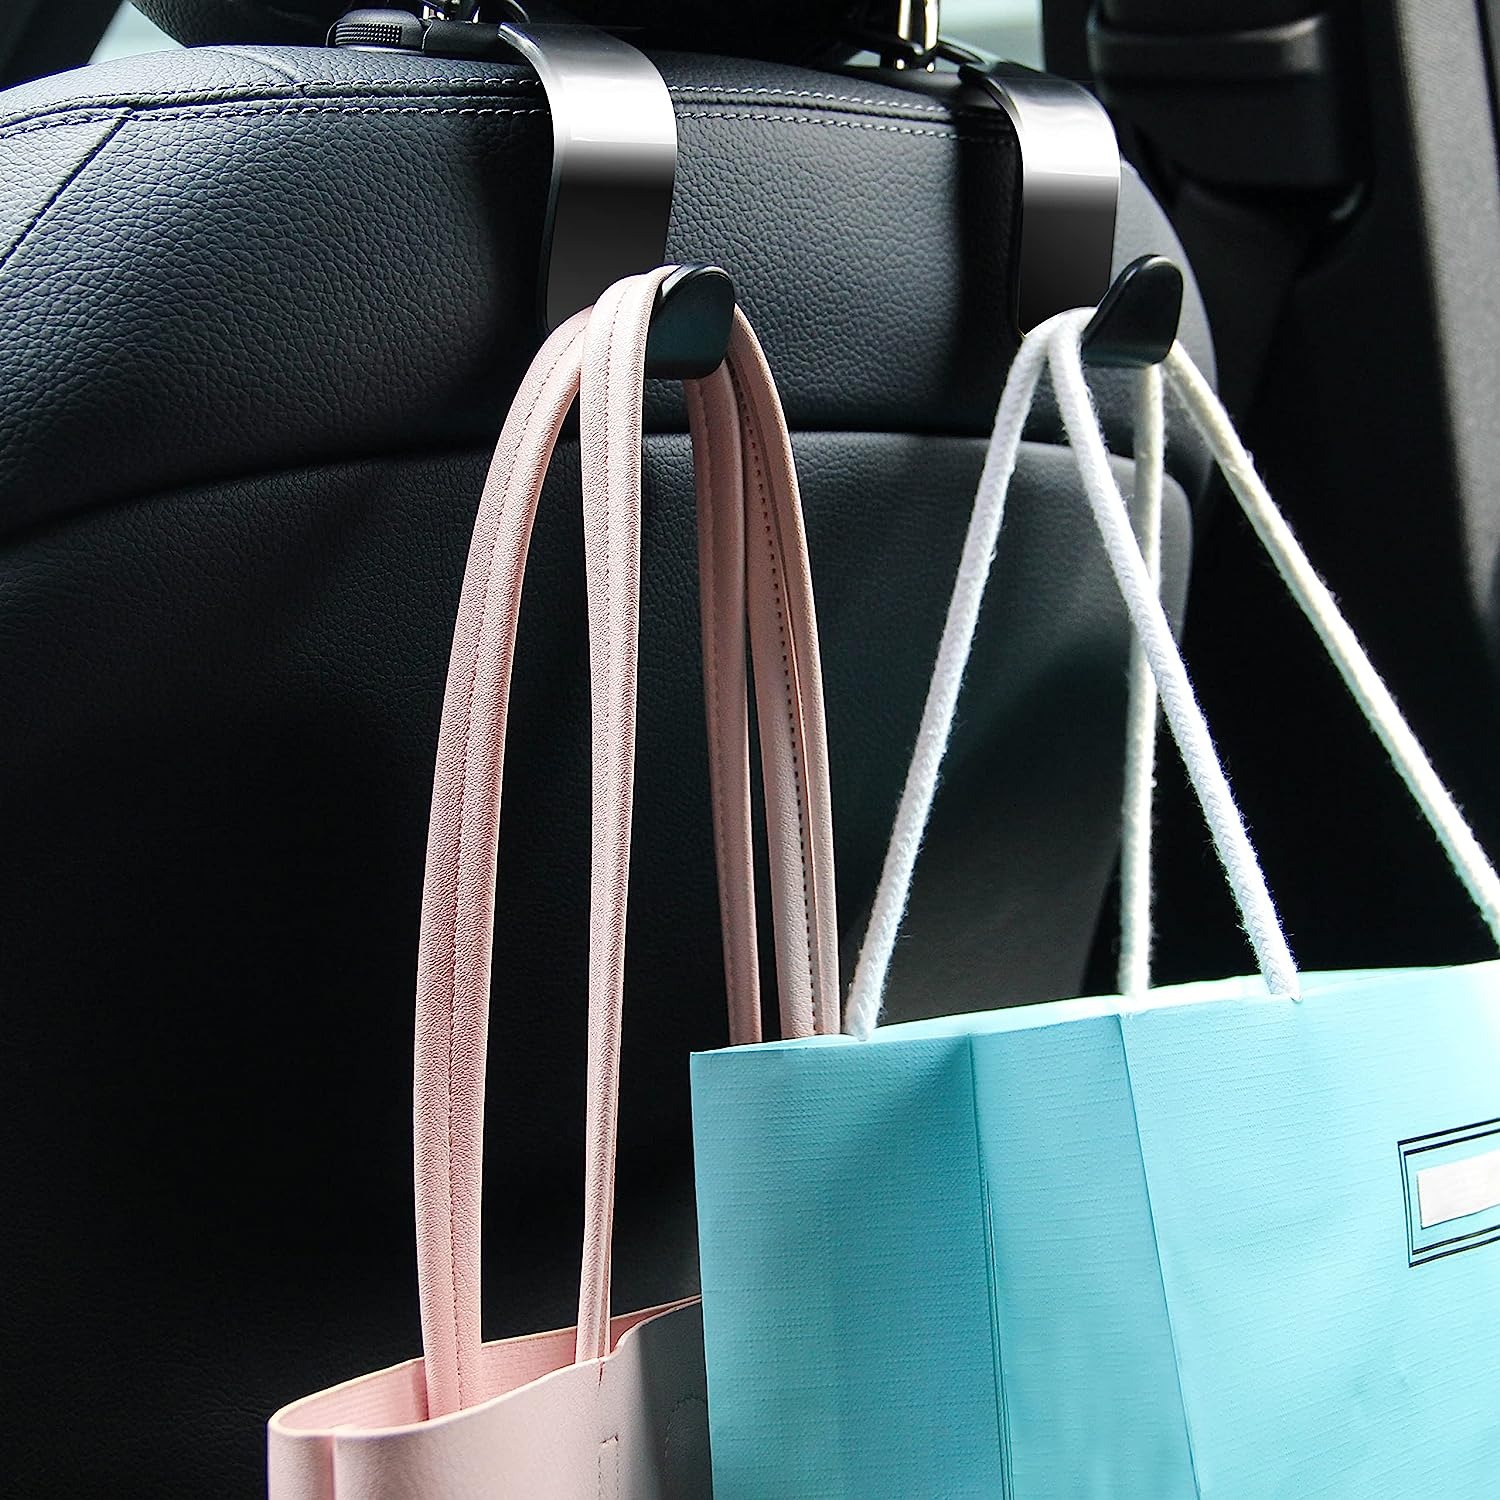  4 Pack Vehicle Back Seat Headrest Hook Hanger for Purse Grocery  Bag Handbag : Automotive